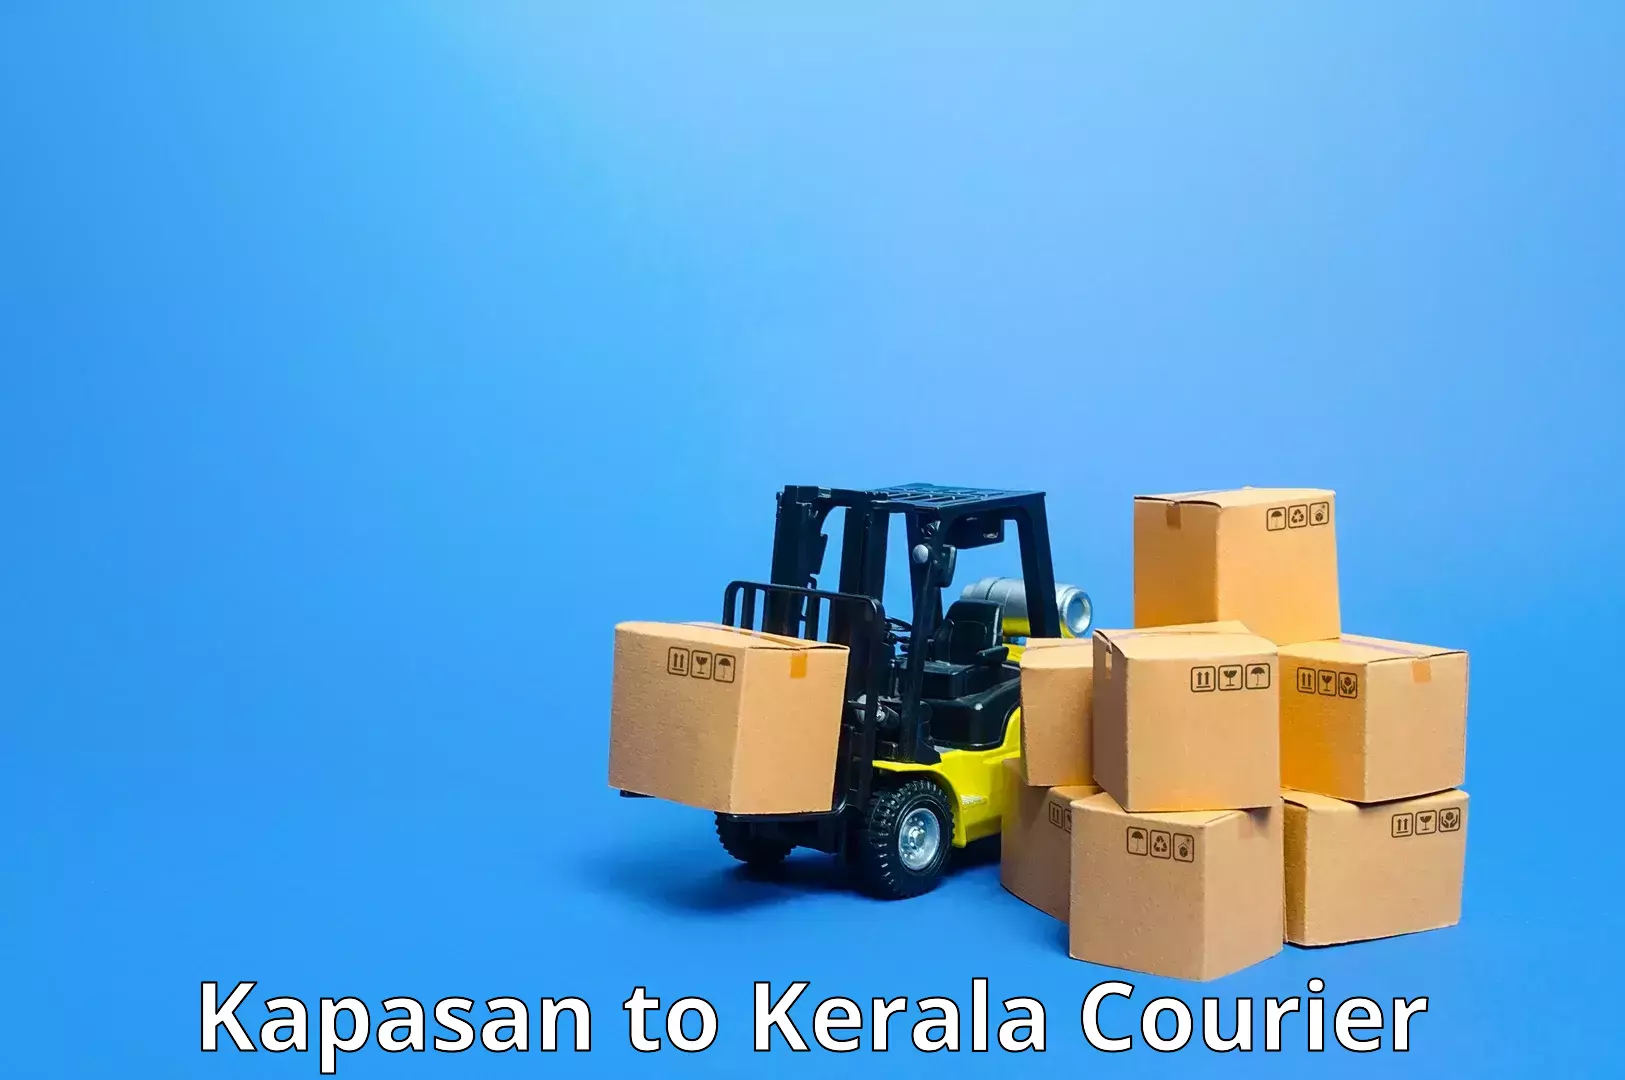 Nationwide shipping capabilities Kapasan to Alappuzha